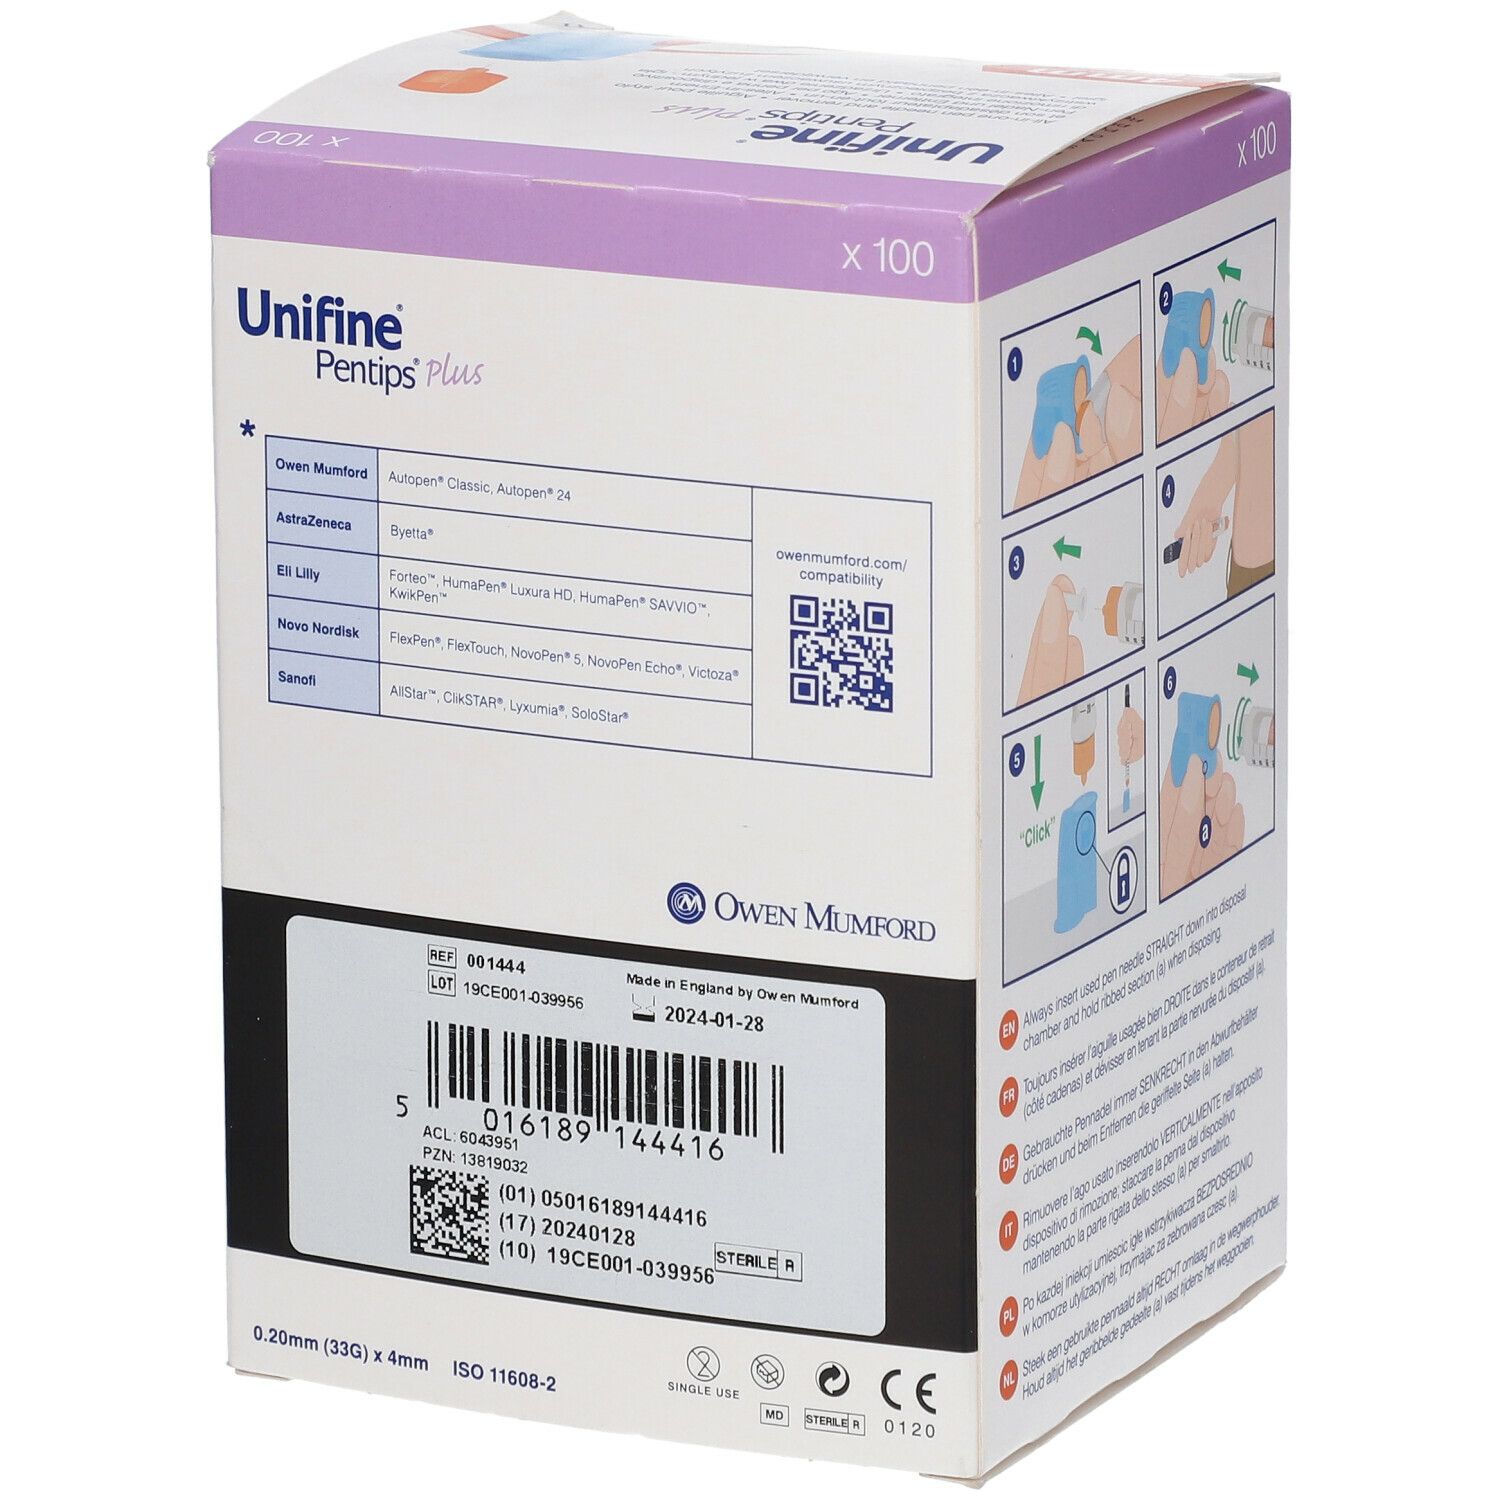 Unifine® Pentips® Plus 33 G 4 mm